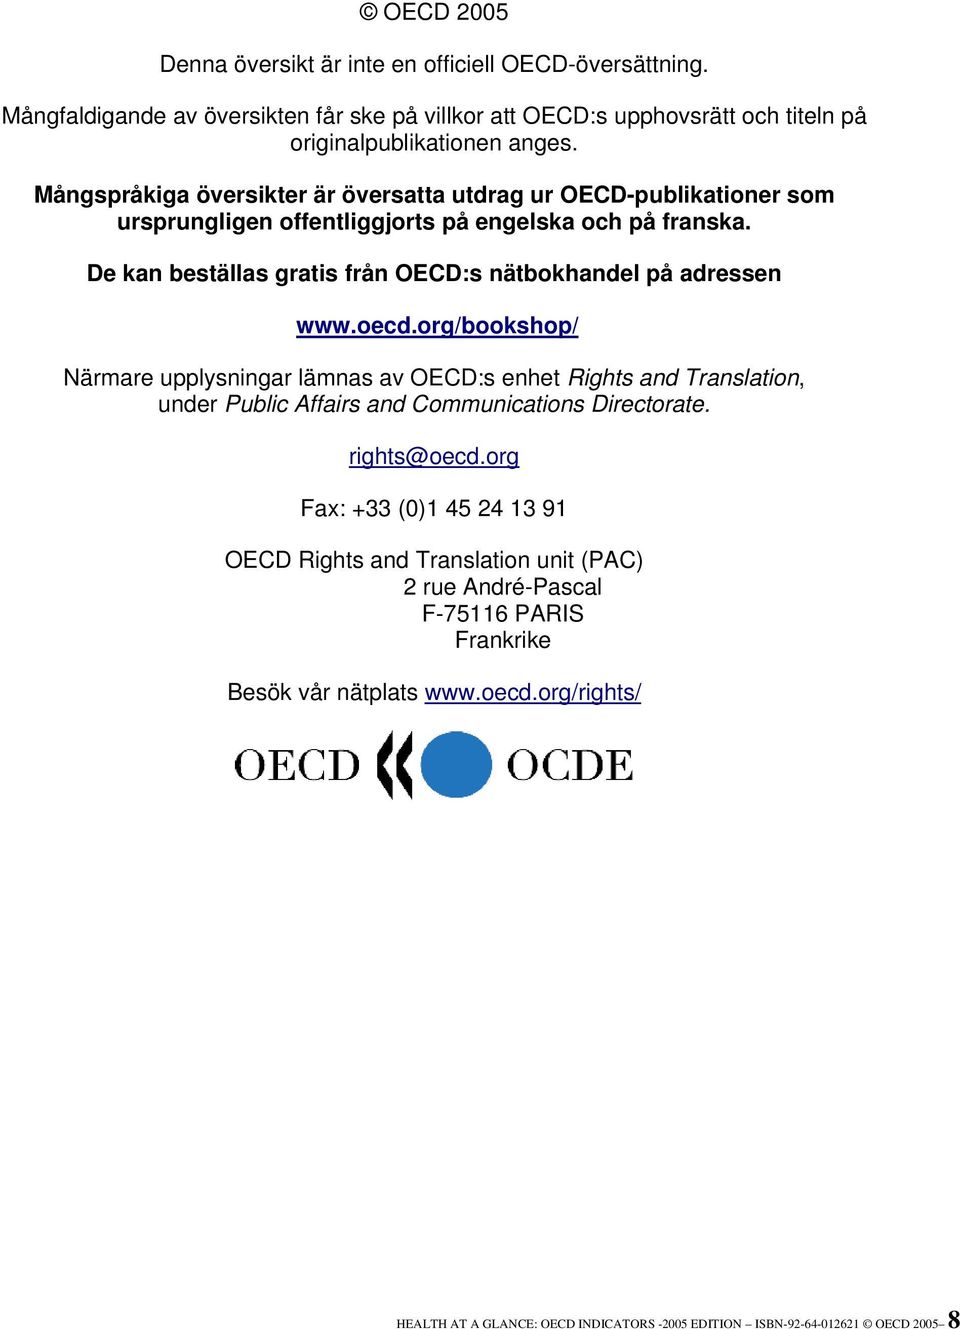 De kan beställas gratis från OECD:s nätbokhandel på adressen www.oecd.